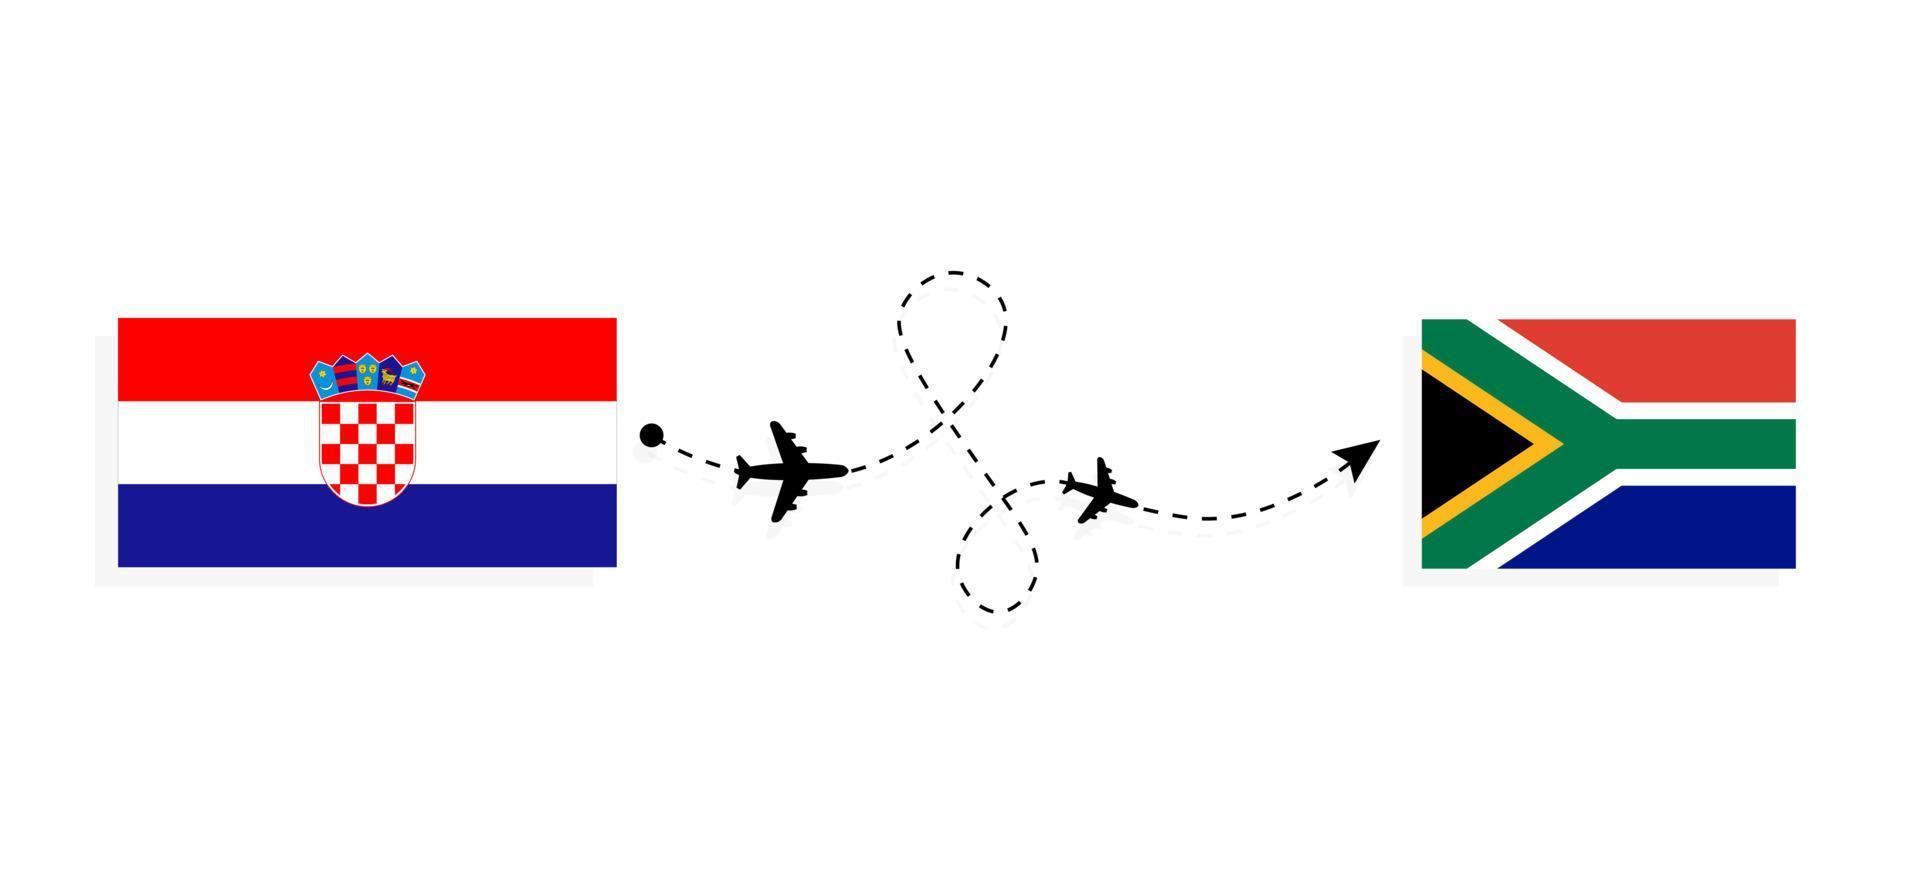 flyg och resor från Kroatien till Sydafrika med resekoncept för passagerarflygplan vektor